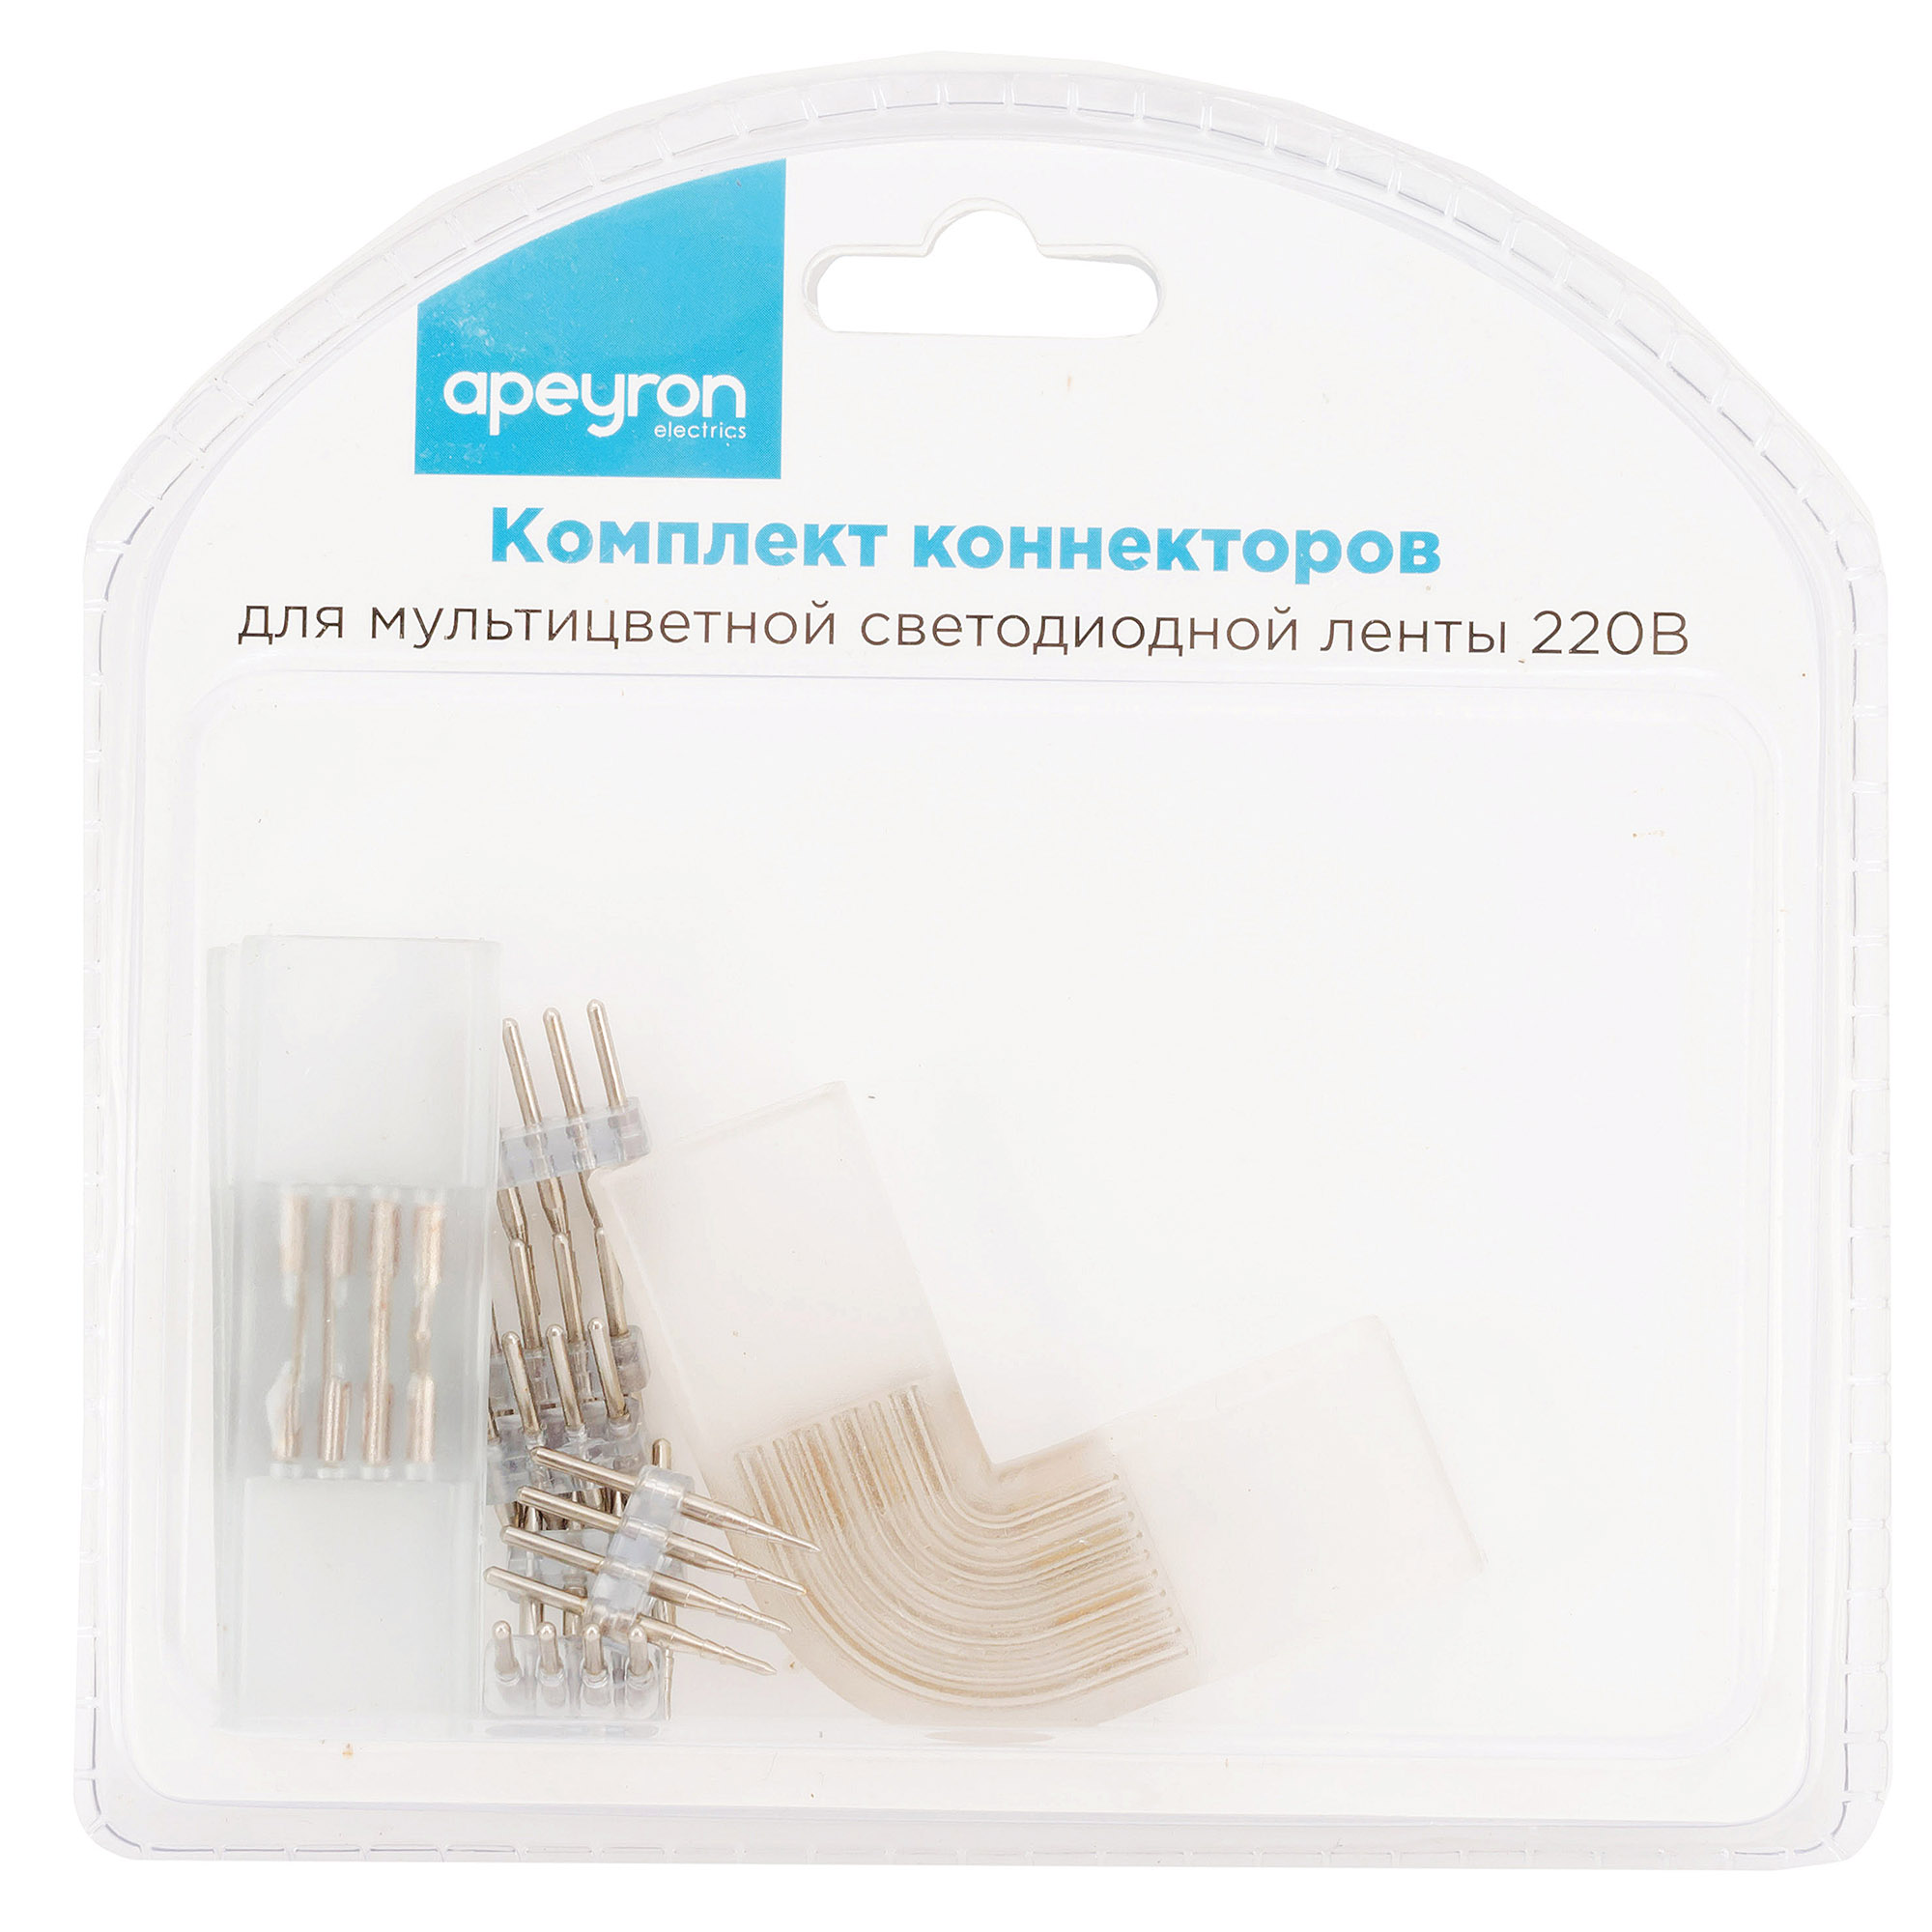 Комплект коннекторов Apeyron (прямой и L-образный) светодиодной ленты 220В smd5050 60д/м RGB 09-19 в Москве